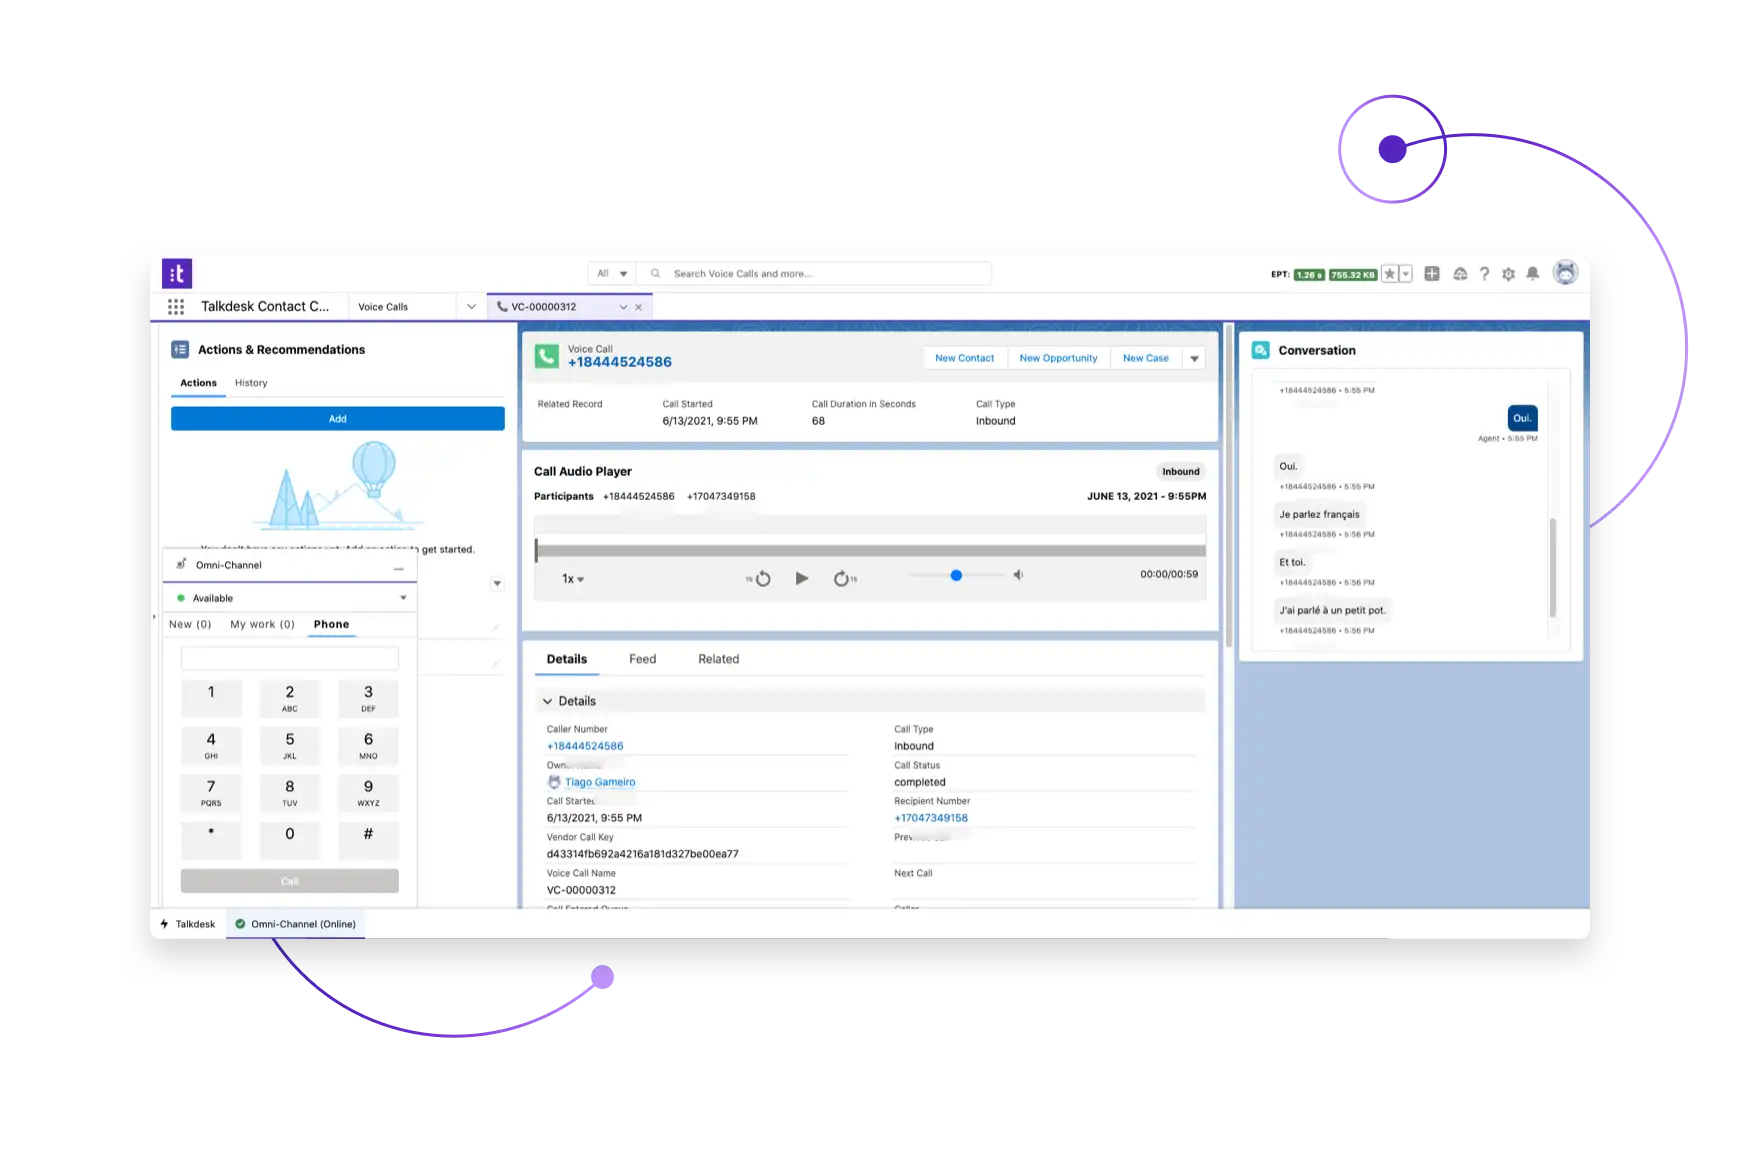 Migliora il CRM con la funzionalità completa di contact center all'interno di Salesforce con Talkdesk per Salesforce.